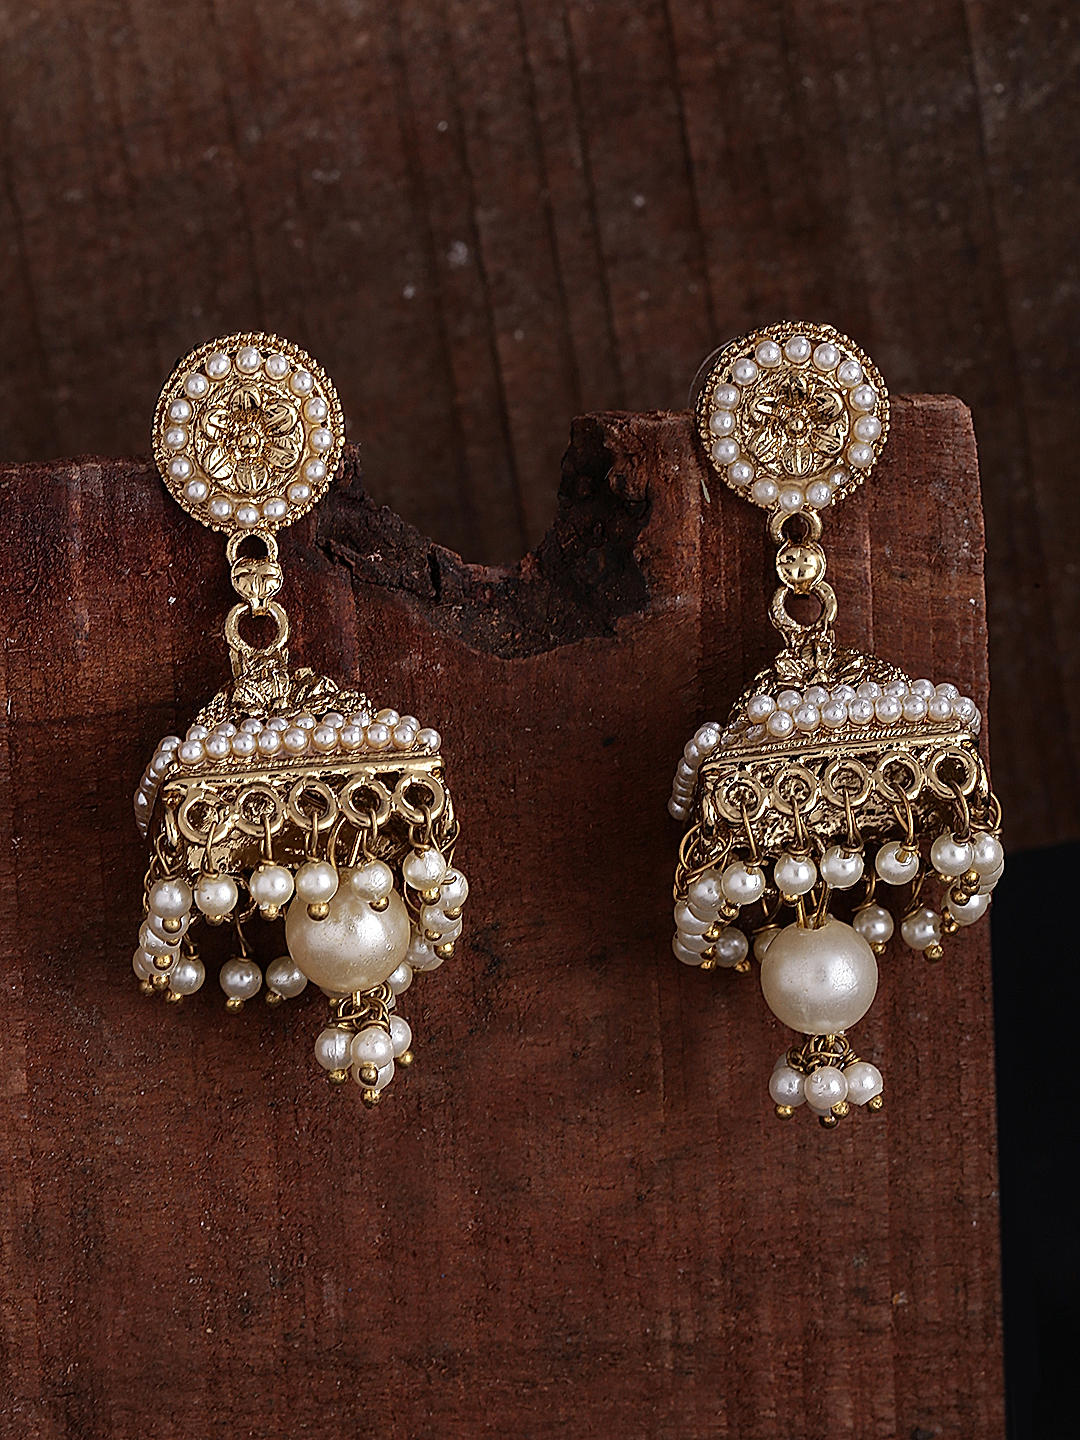 Jaipur Jhumka Earrings, Brown Gold Lac Earrings, Brown Gold Jhumkas, Crystal  Earrings, Antique Earrings, Vintage Jewelry by Taneesi - Etsy